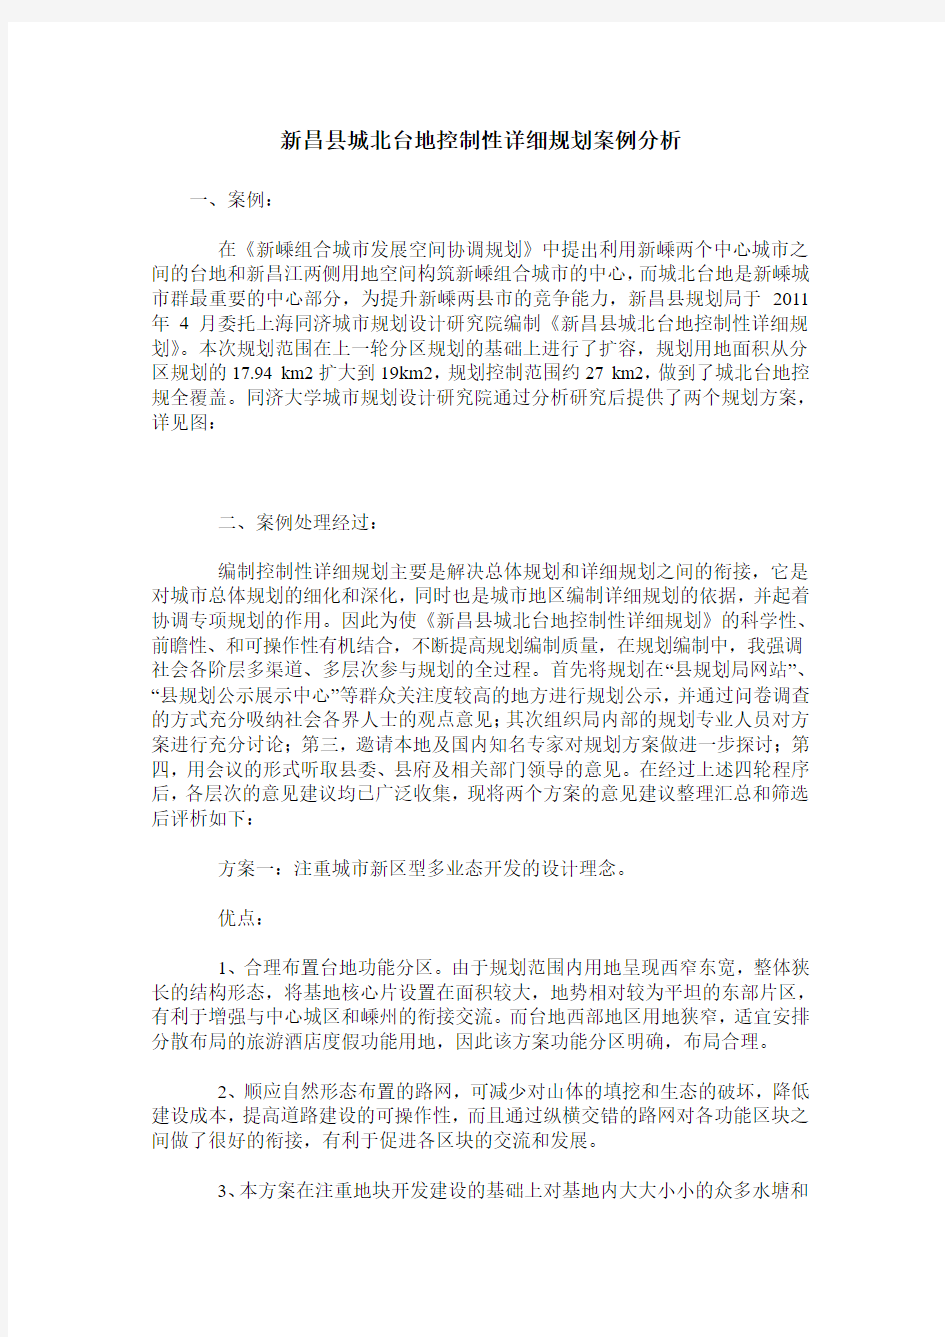 新昌县城北台地控制性详细规划案例分析